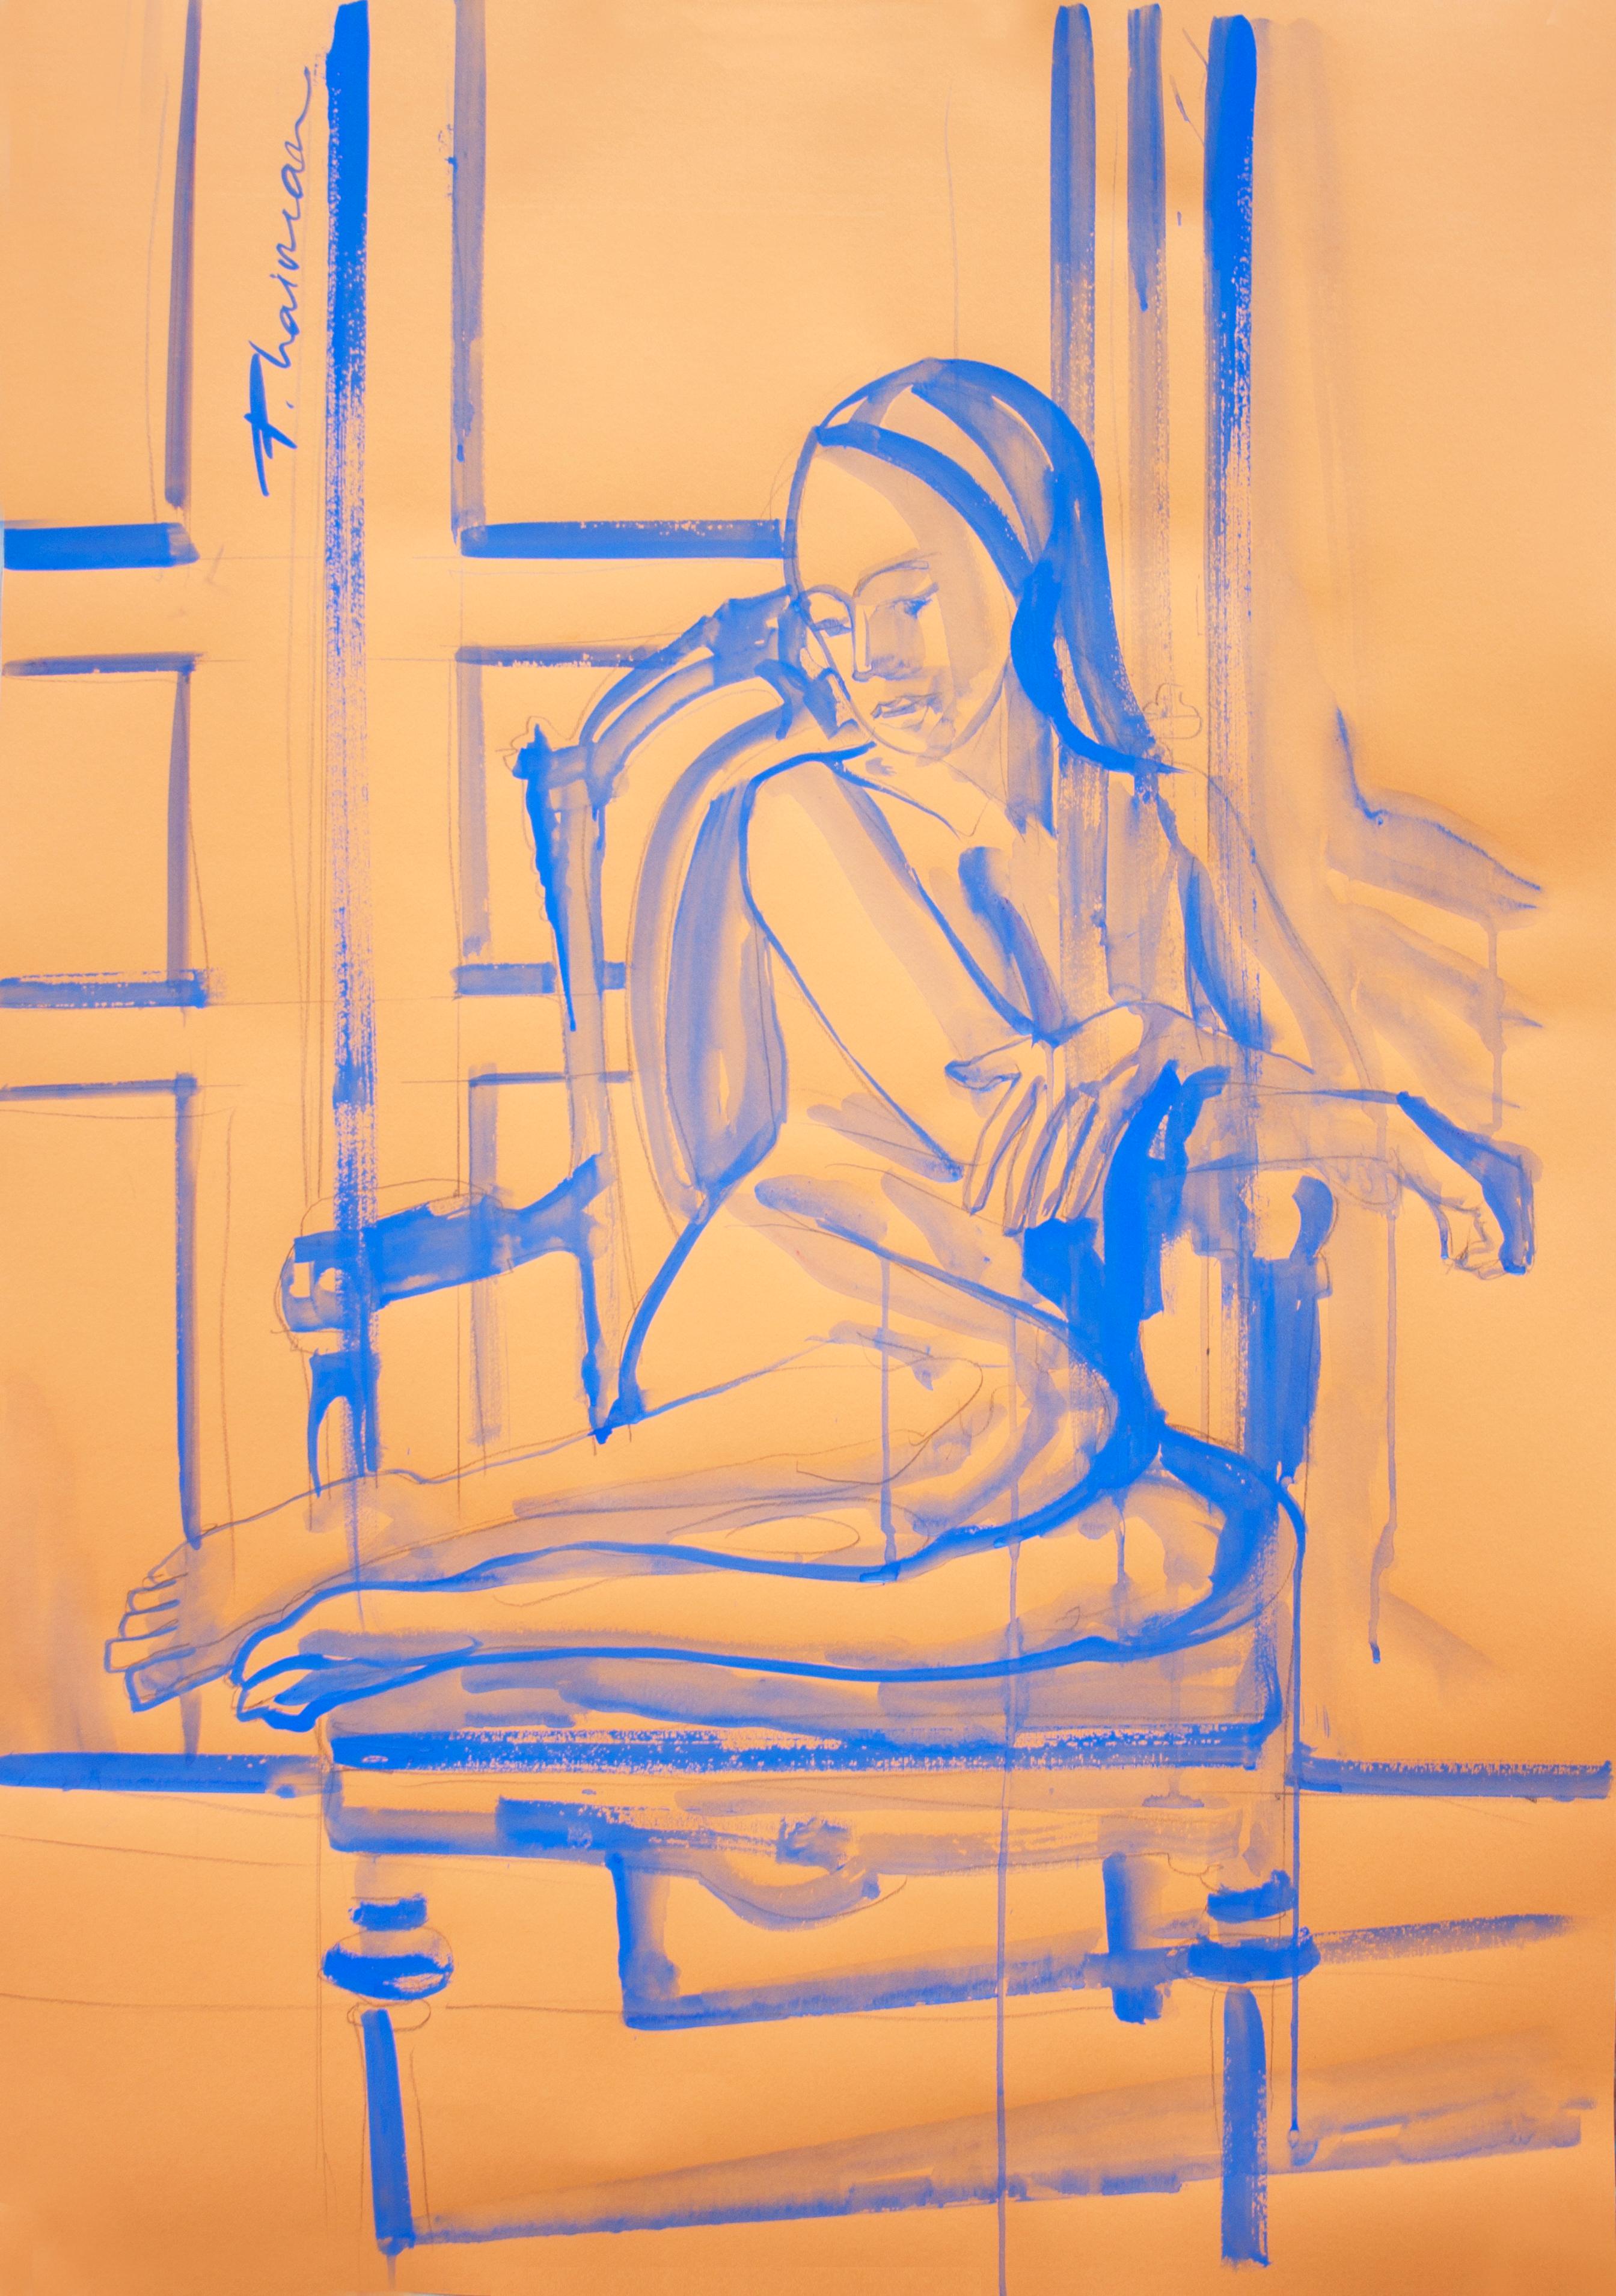 "Einsamkeit", Bleistift und ultramarinblaue Tempera auf Papier, inspiriert von Matisse.
Teil der Serie Nude in Interior.
Große Zeichnung. Die Lieferung erfolgt in einer Rolle direkt aus Florida, USA.
39x27.5in / 100x70cm

Künstlerisches